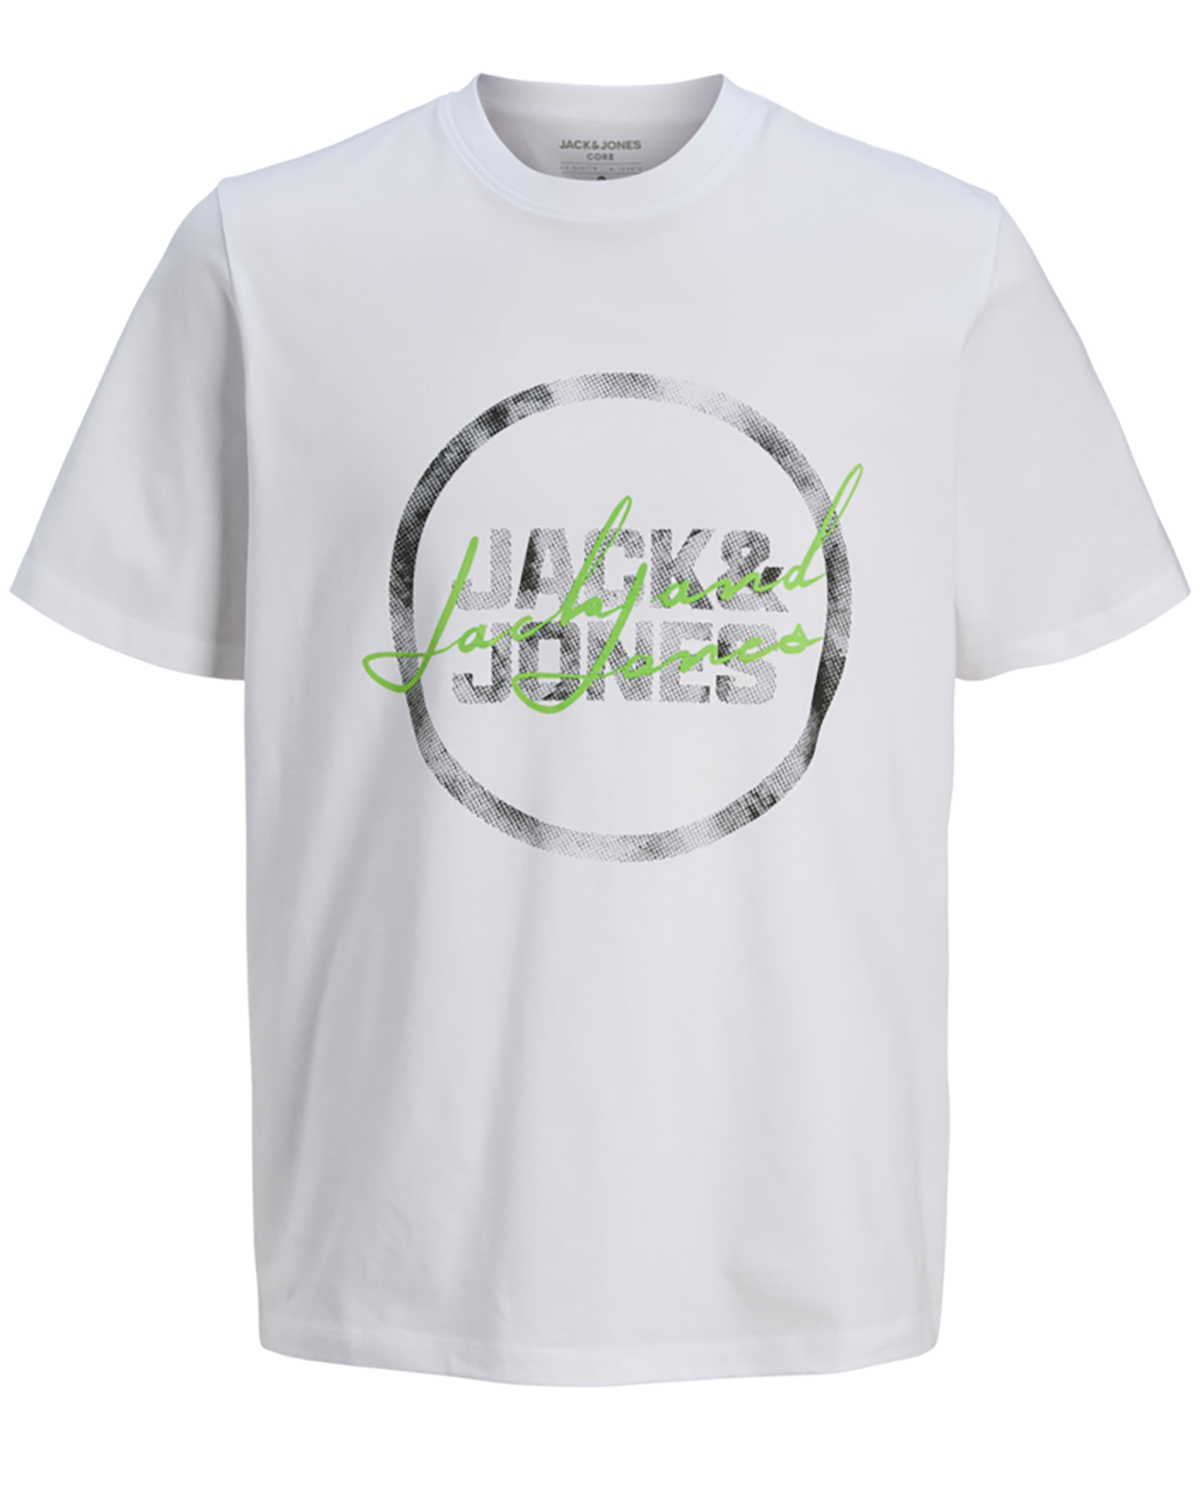 Jack & Jones t-shirt s/s, Script tee, hvid - 188,L+,L